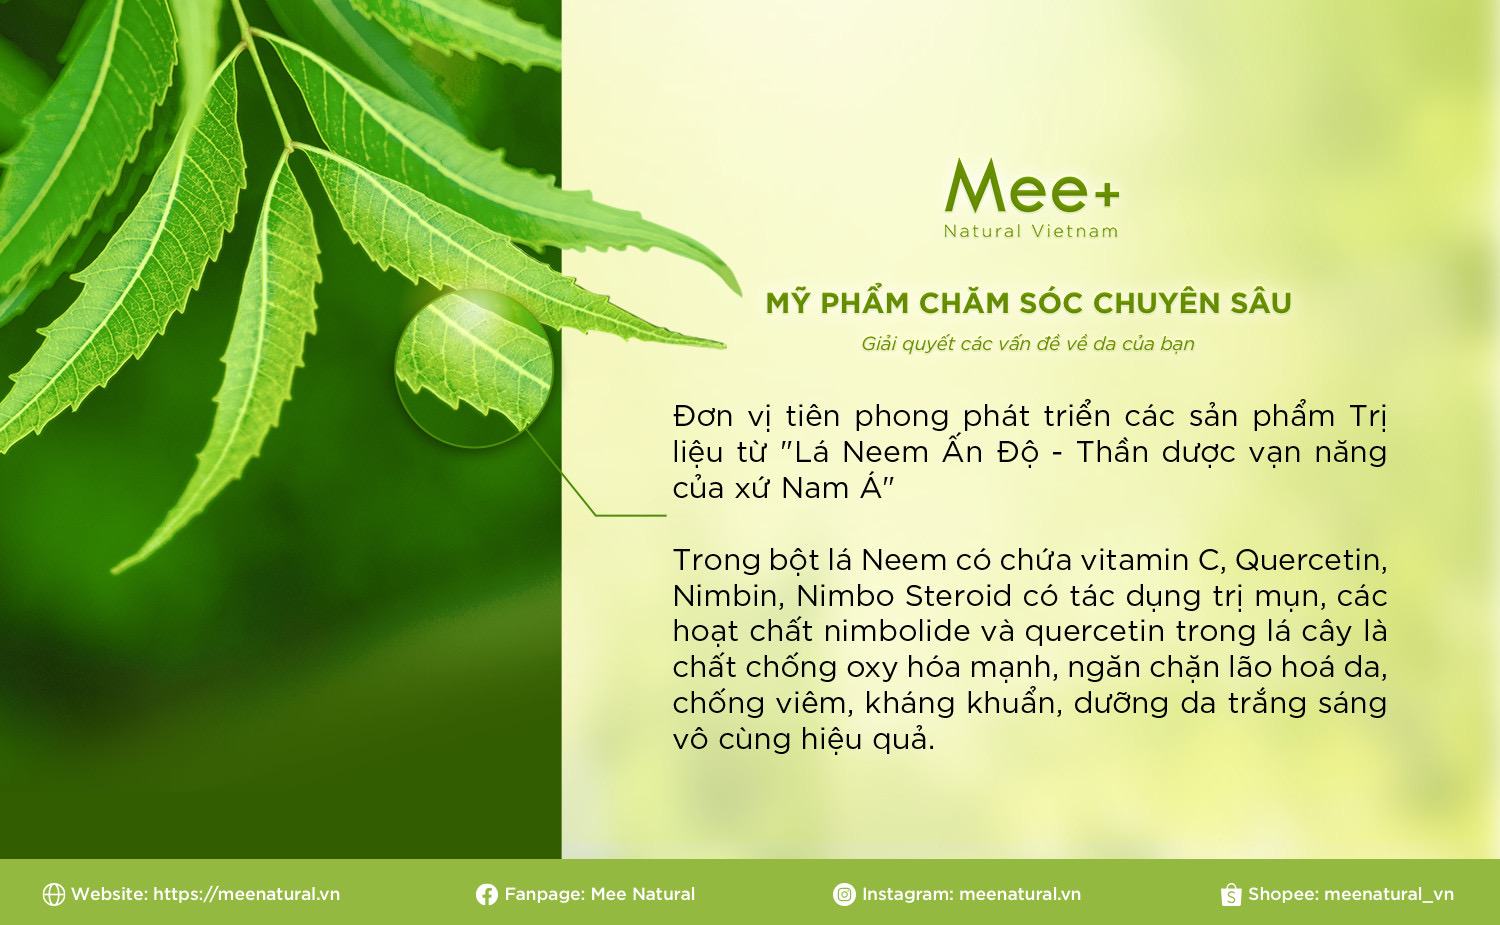 Mee Natural – Mỹ phẩm chăm sóc chuyên sâu, thương hiệu Việt cho người Việt - Ảnh 2.